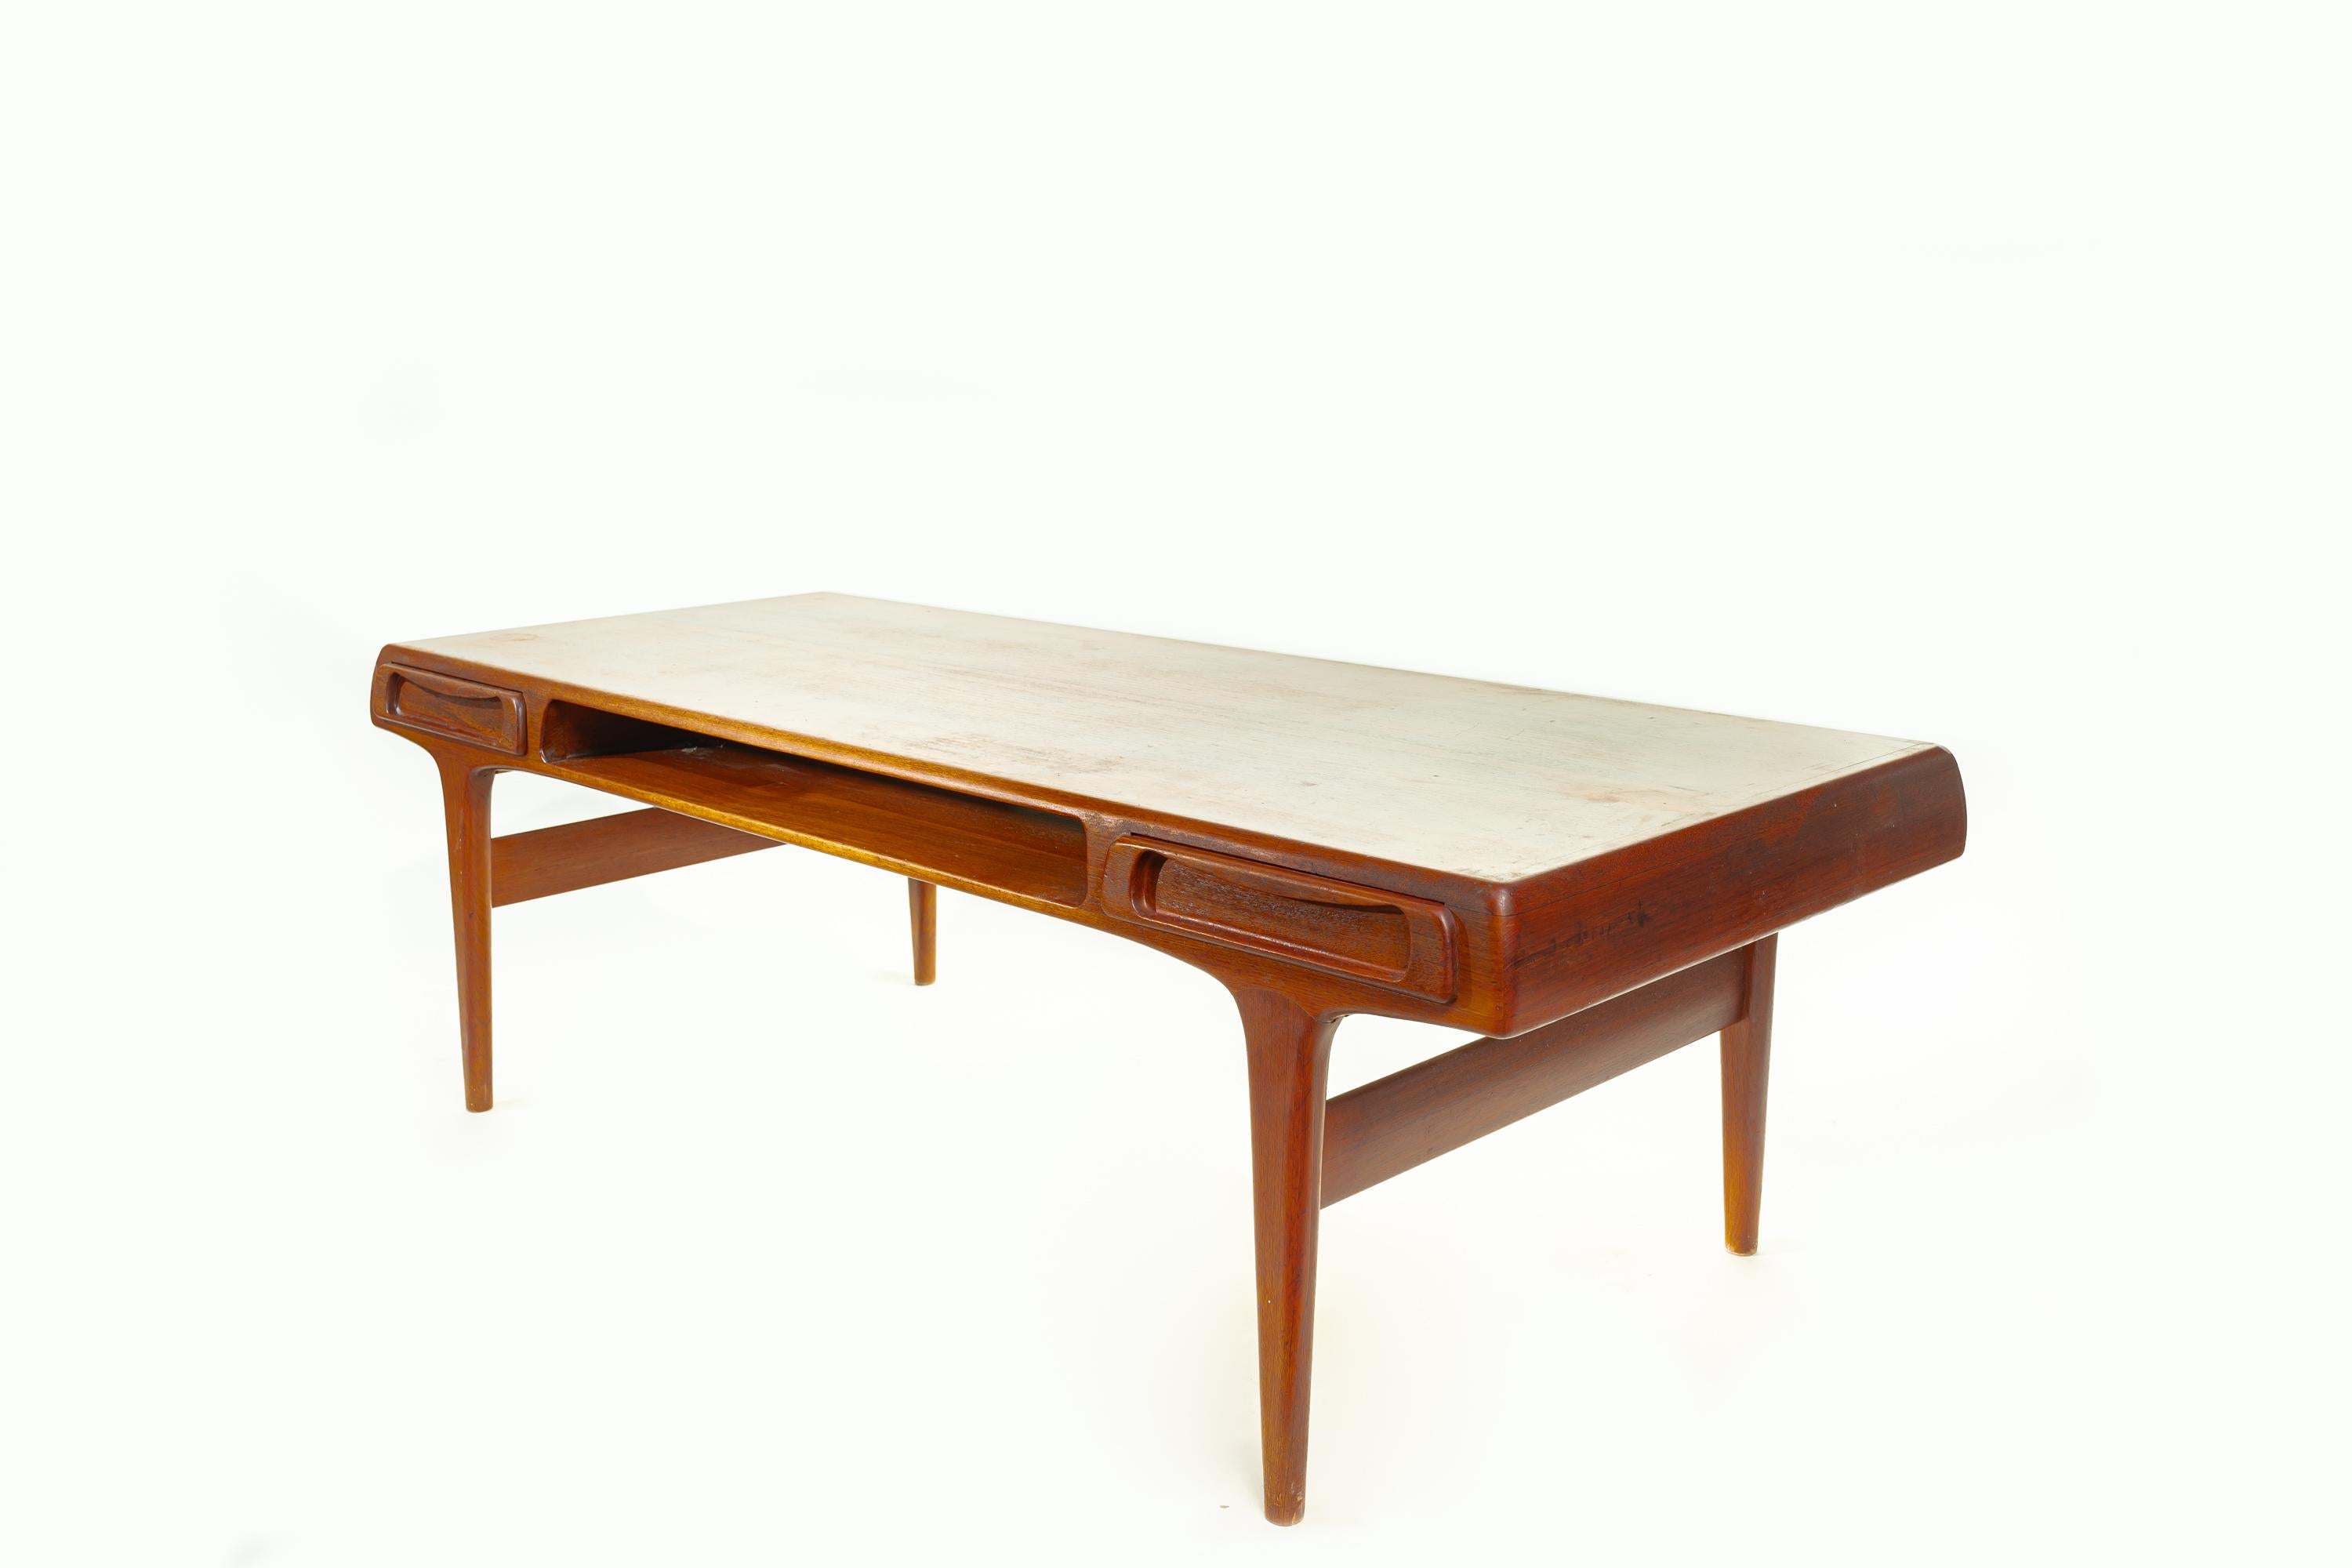 Table basse classique The Modern Scandinavian mid-century design by Johannes Andersen. La table est fabriquée en teck massif et comporte deux tiroirs latéraux et un compartiment ouvert au milieu.

La table est un exemple parfait du style